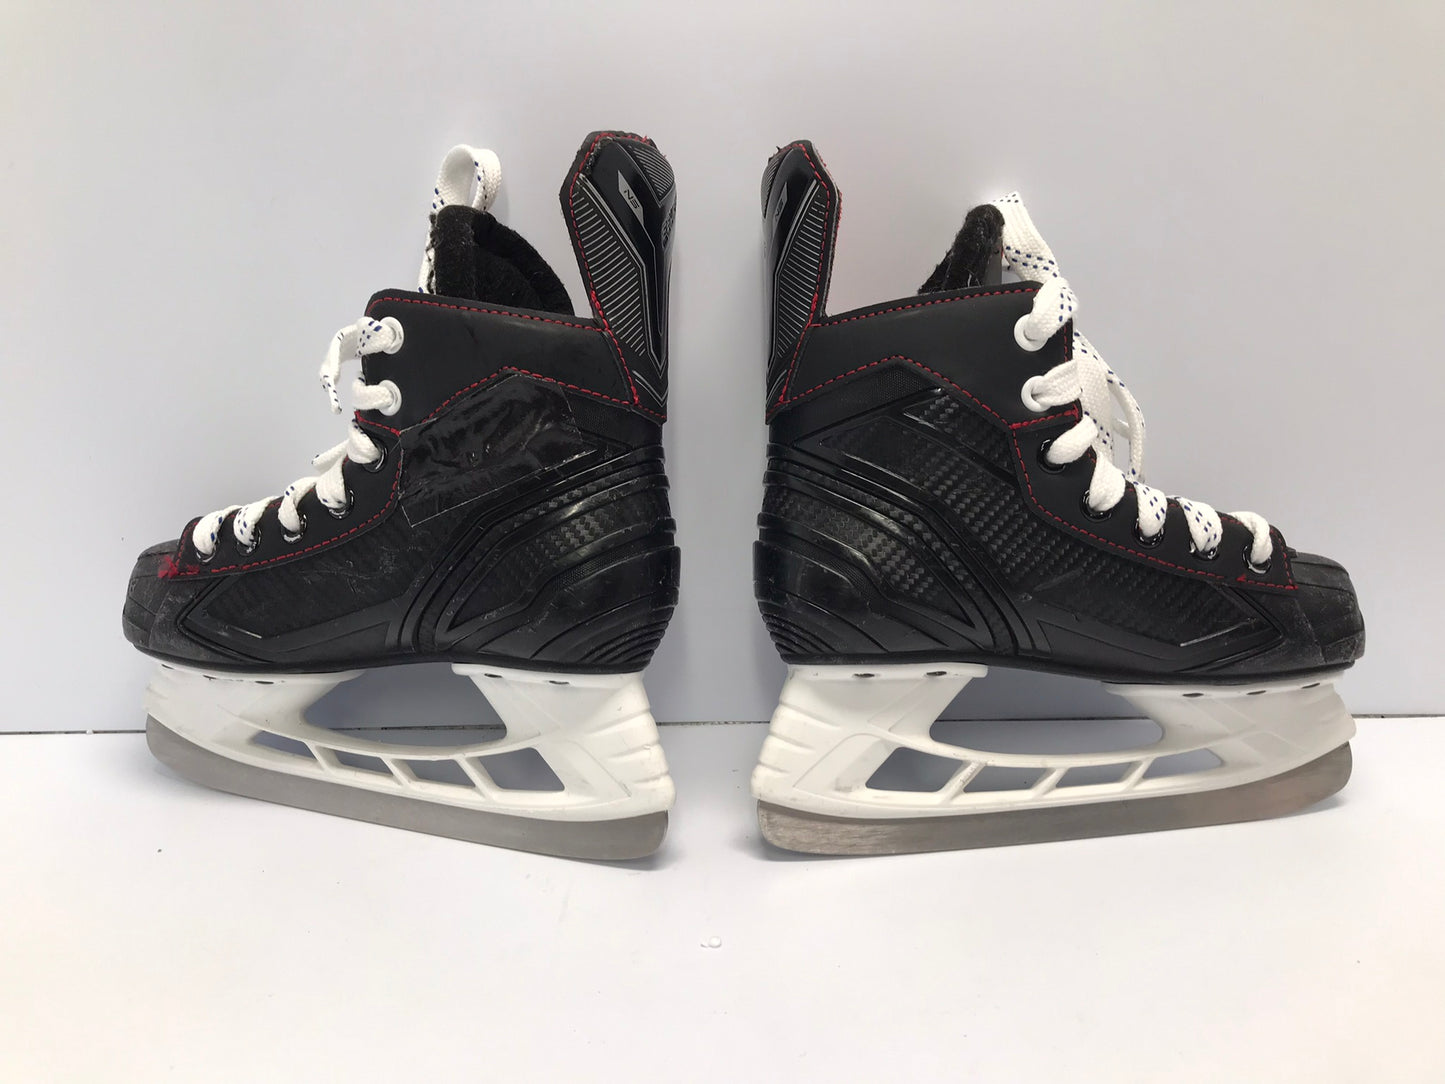 Hockey Skates Child Size 1 Shoe Size Bauer NS